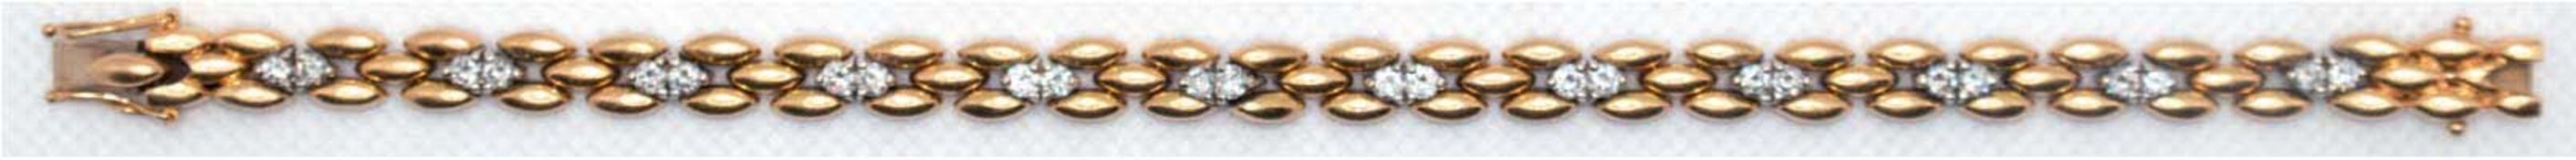 Brillant-Armband, 750er GG/WG, besetzt mit 24 Brillanten in Krappenfassung von zus. ca. 1,20 ct., S